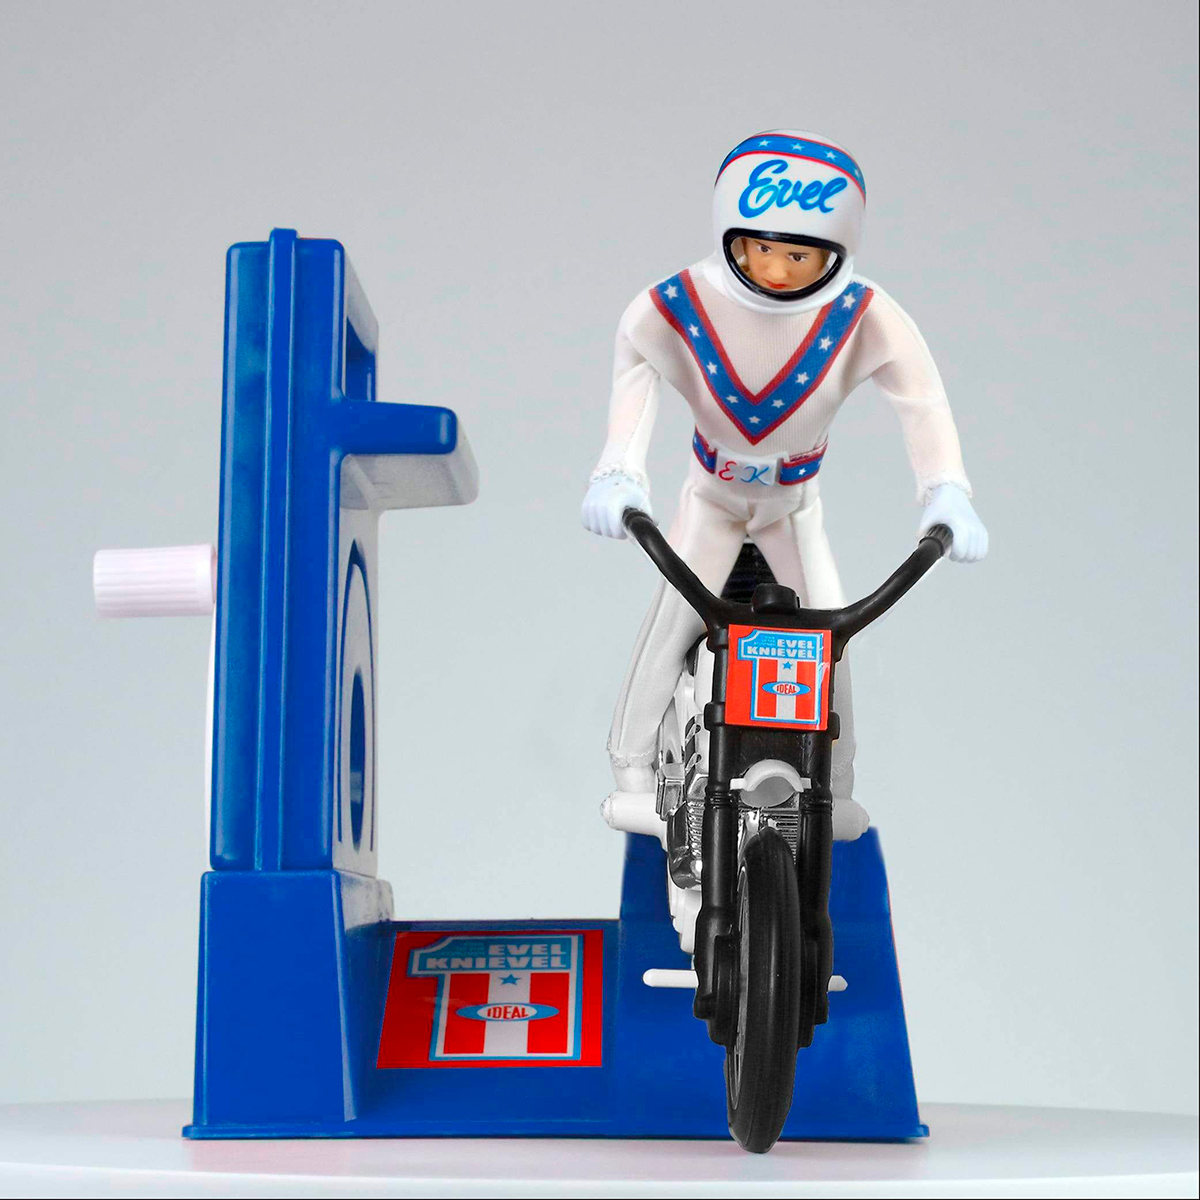 El muñeco de Evel Knievel y su moto de acrobacias, listos para la acción